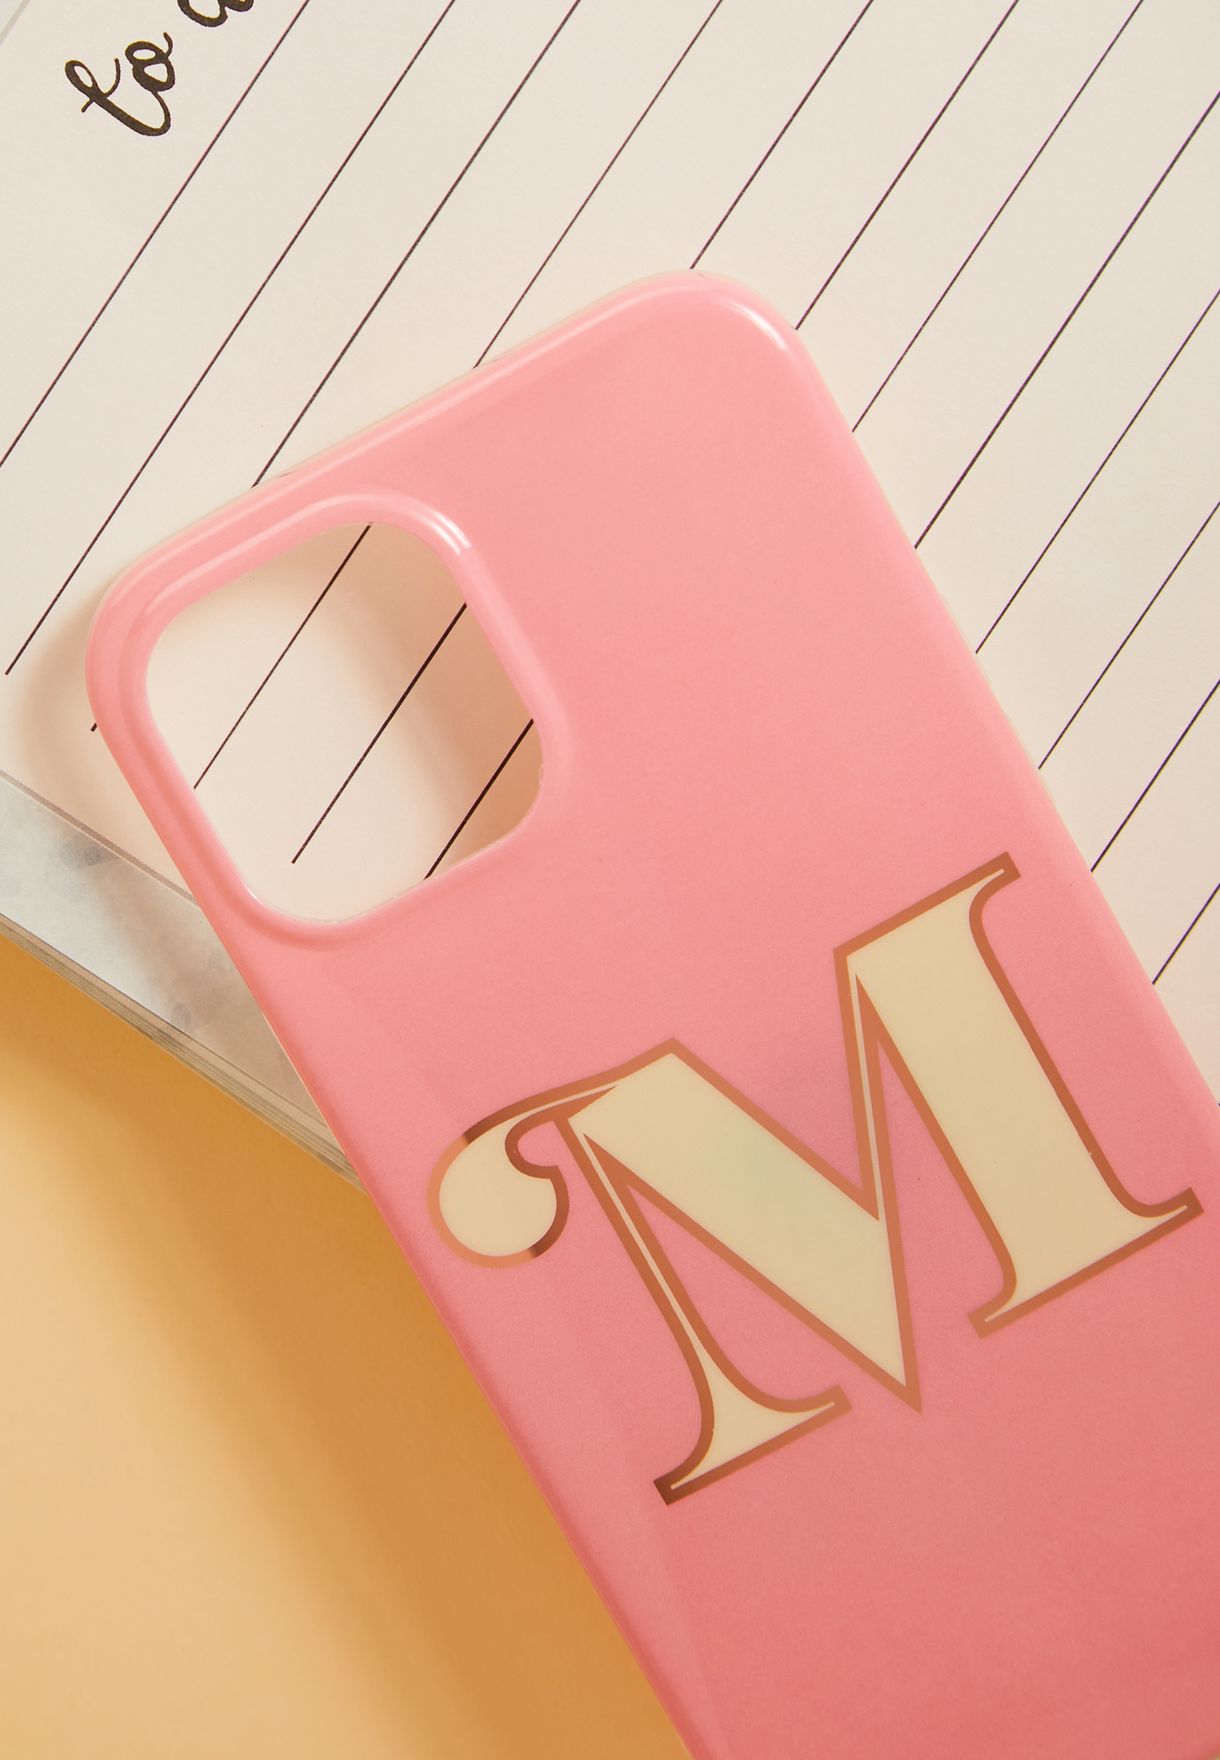 Monogram M Iphone 12 Pro Max Case